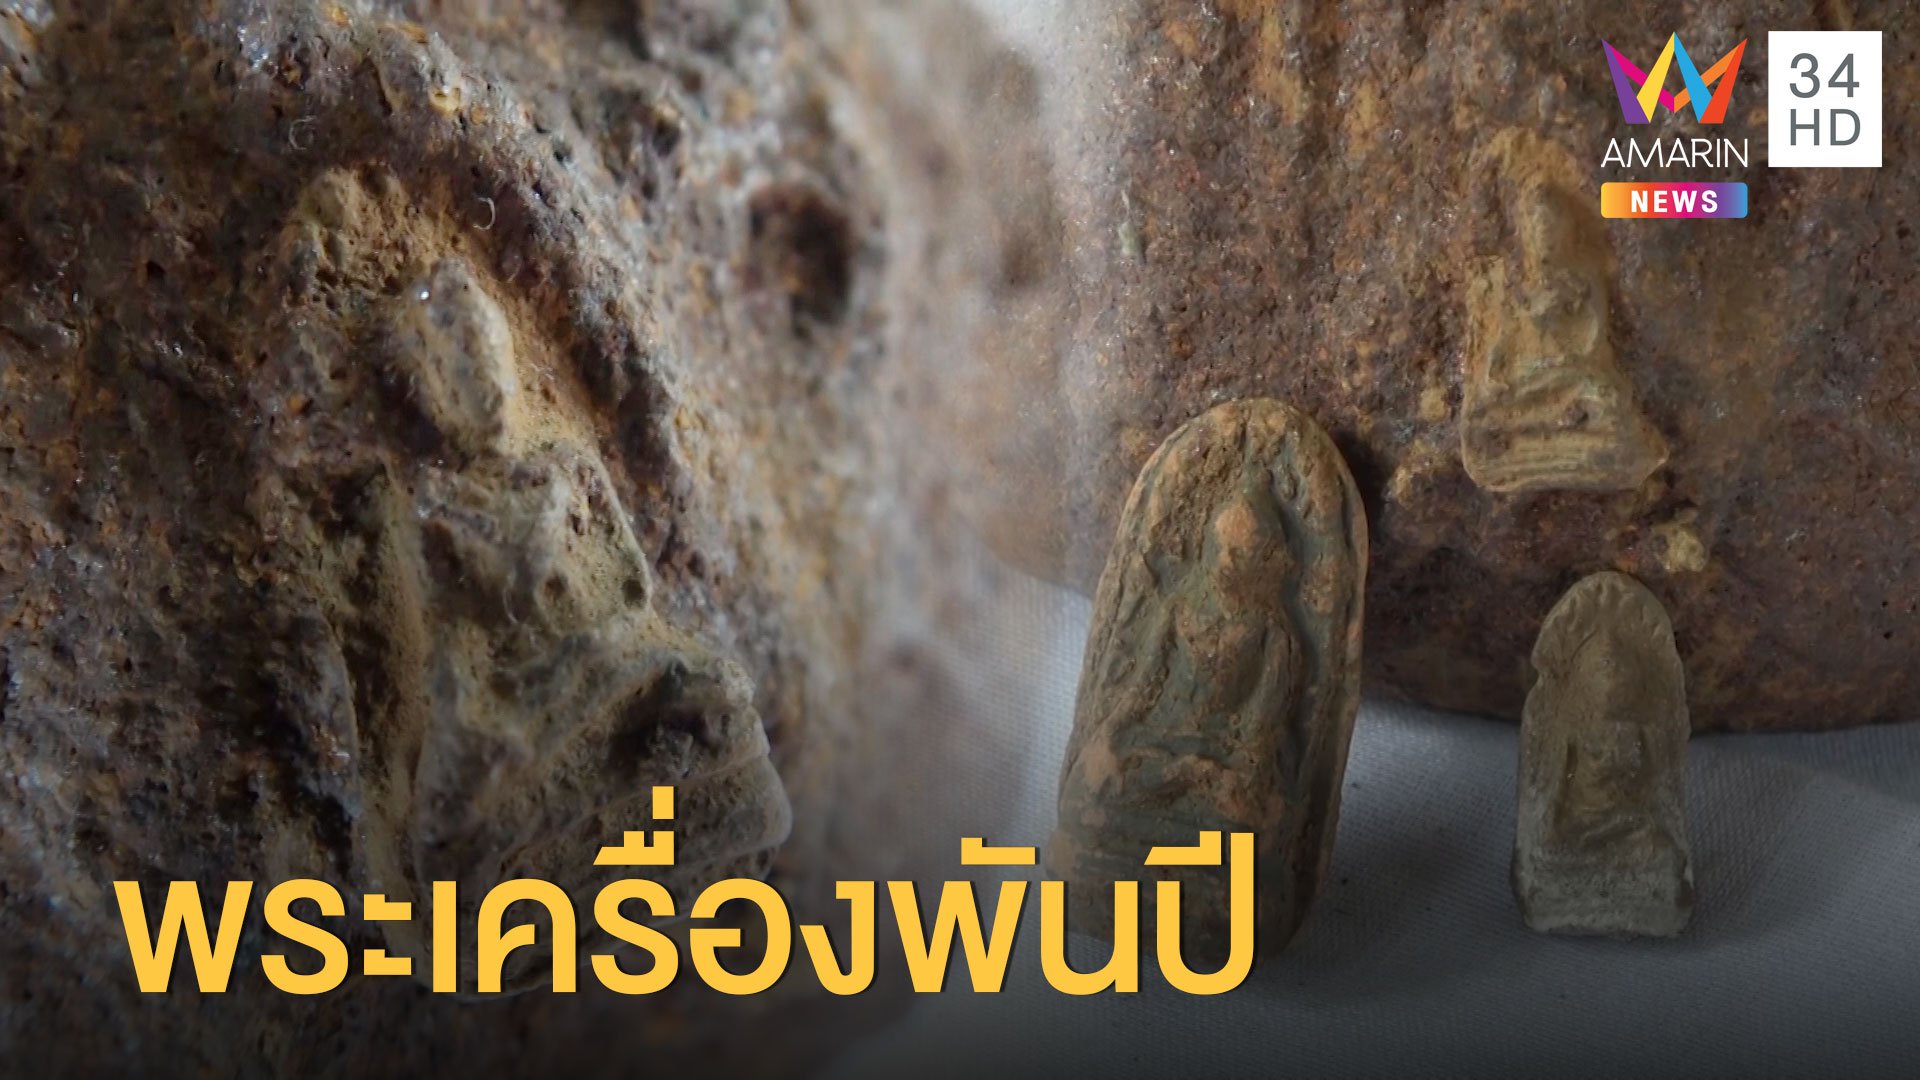  เจอพระเครื่องโบราณ อายุกว่าพันปี ติดอยู่บนไห | ข่าวอรุณอมรินทร์ | 25 ส.ค. 63 | AMARIN TVHD34